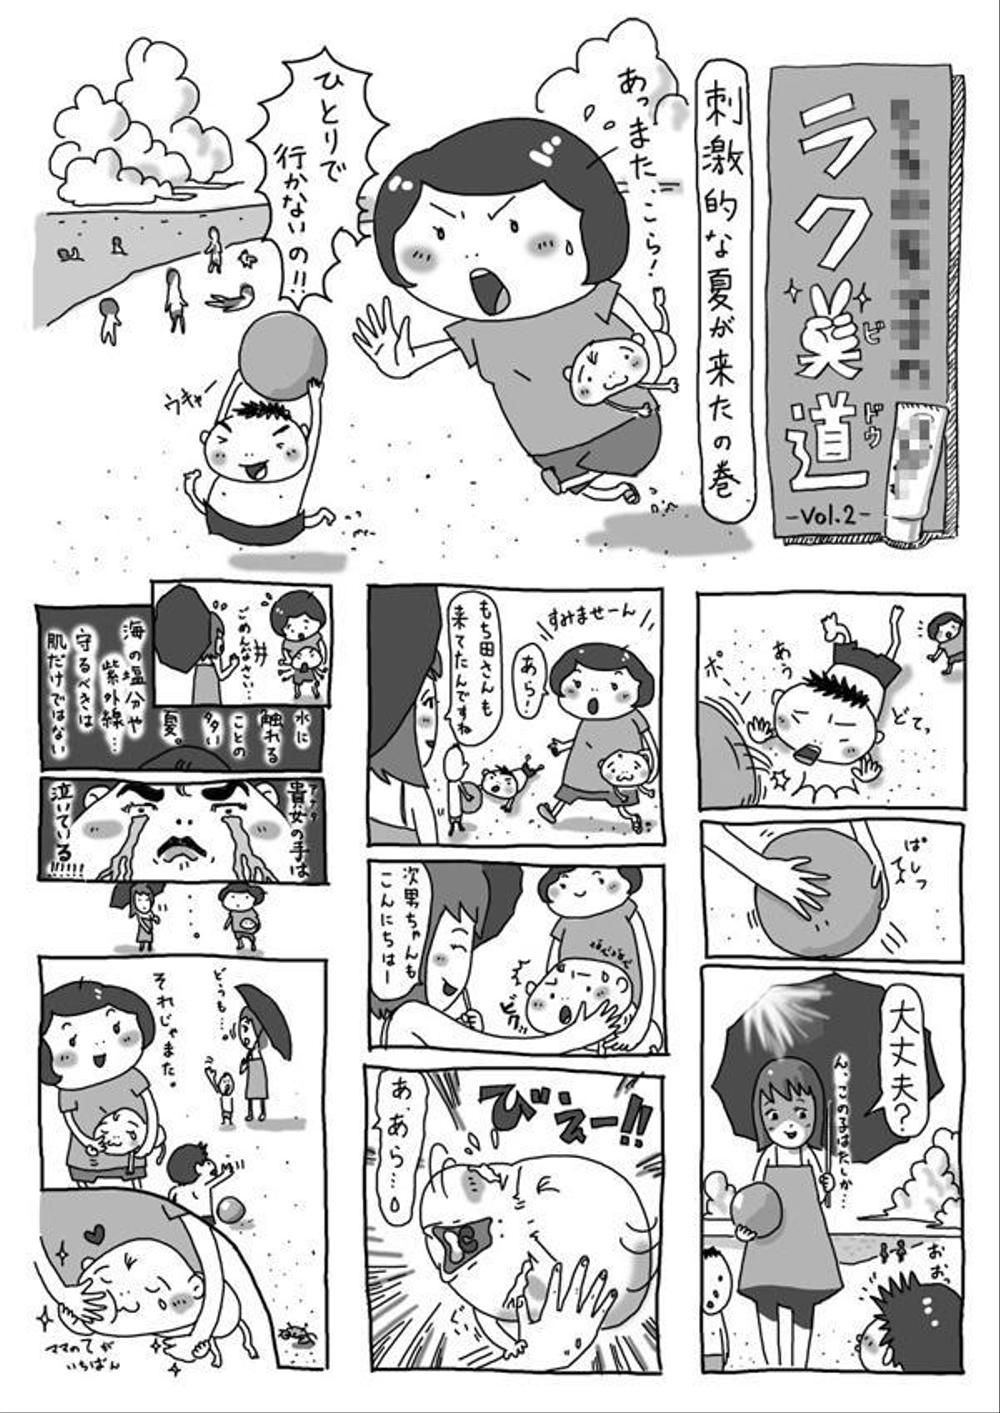 漫画広告「もちだママの楽美道 vol.2」